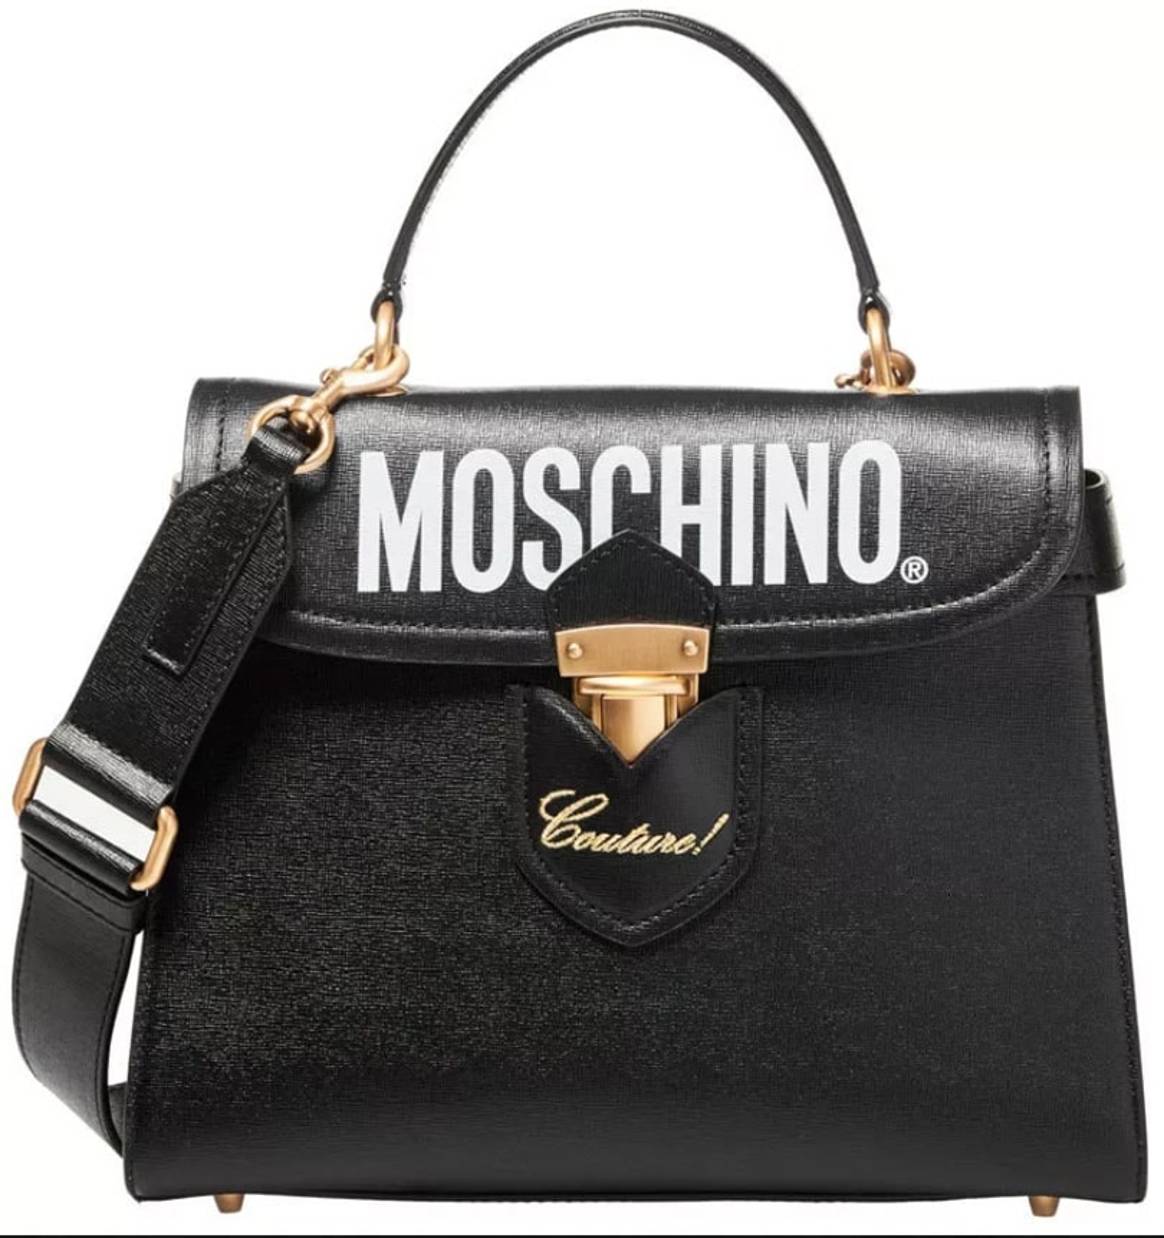 Moschino opent pop-upstore in Parijs warenhuis Printemps